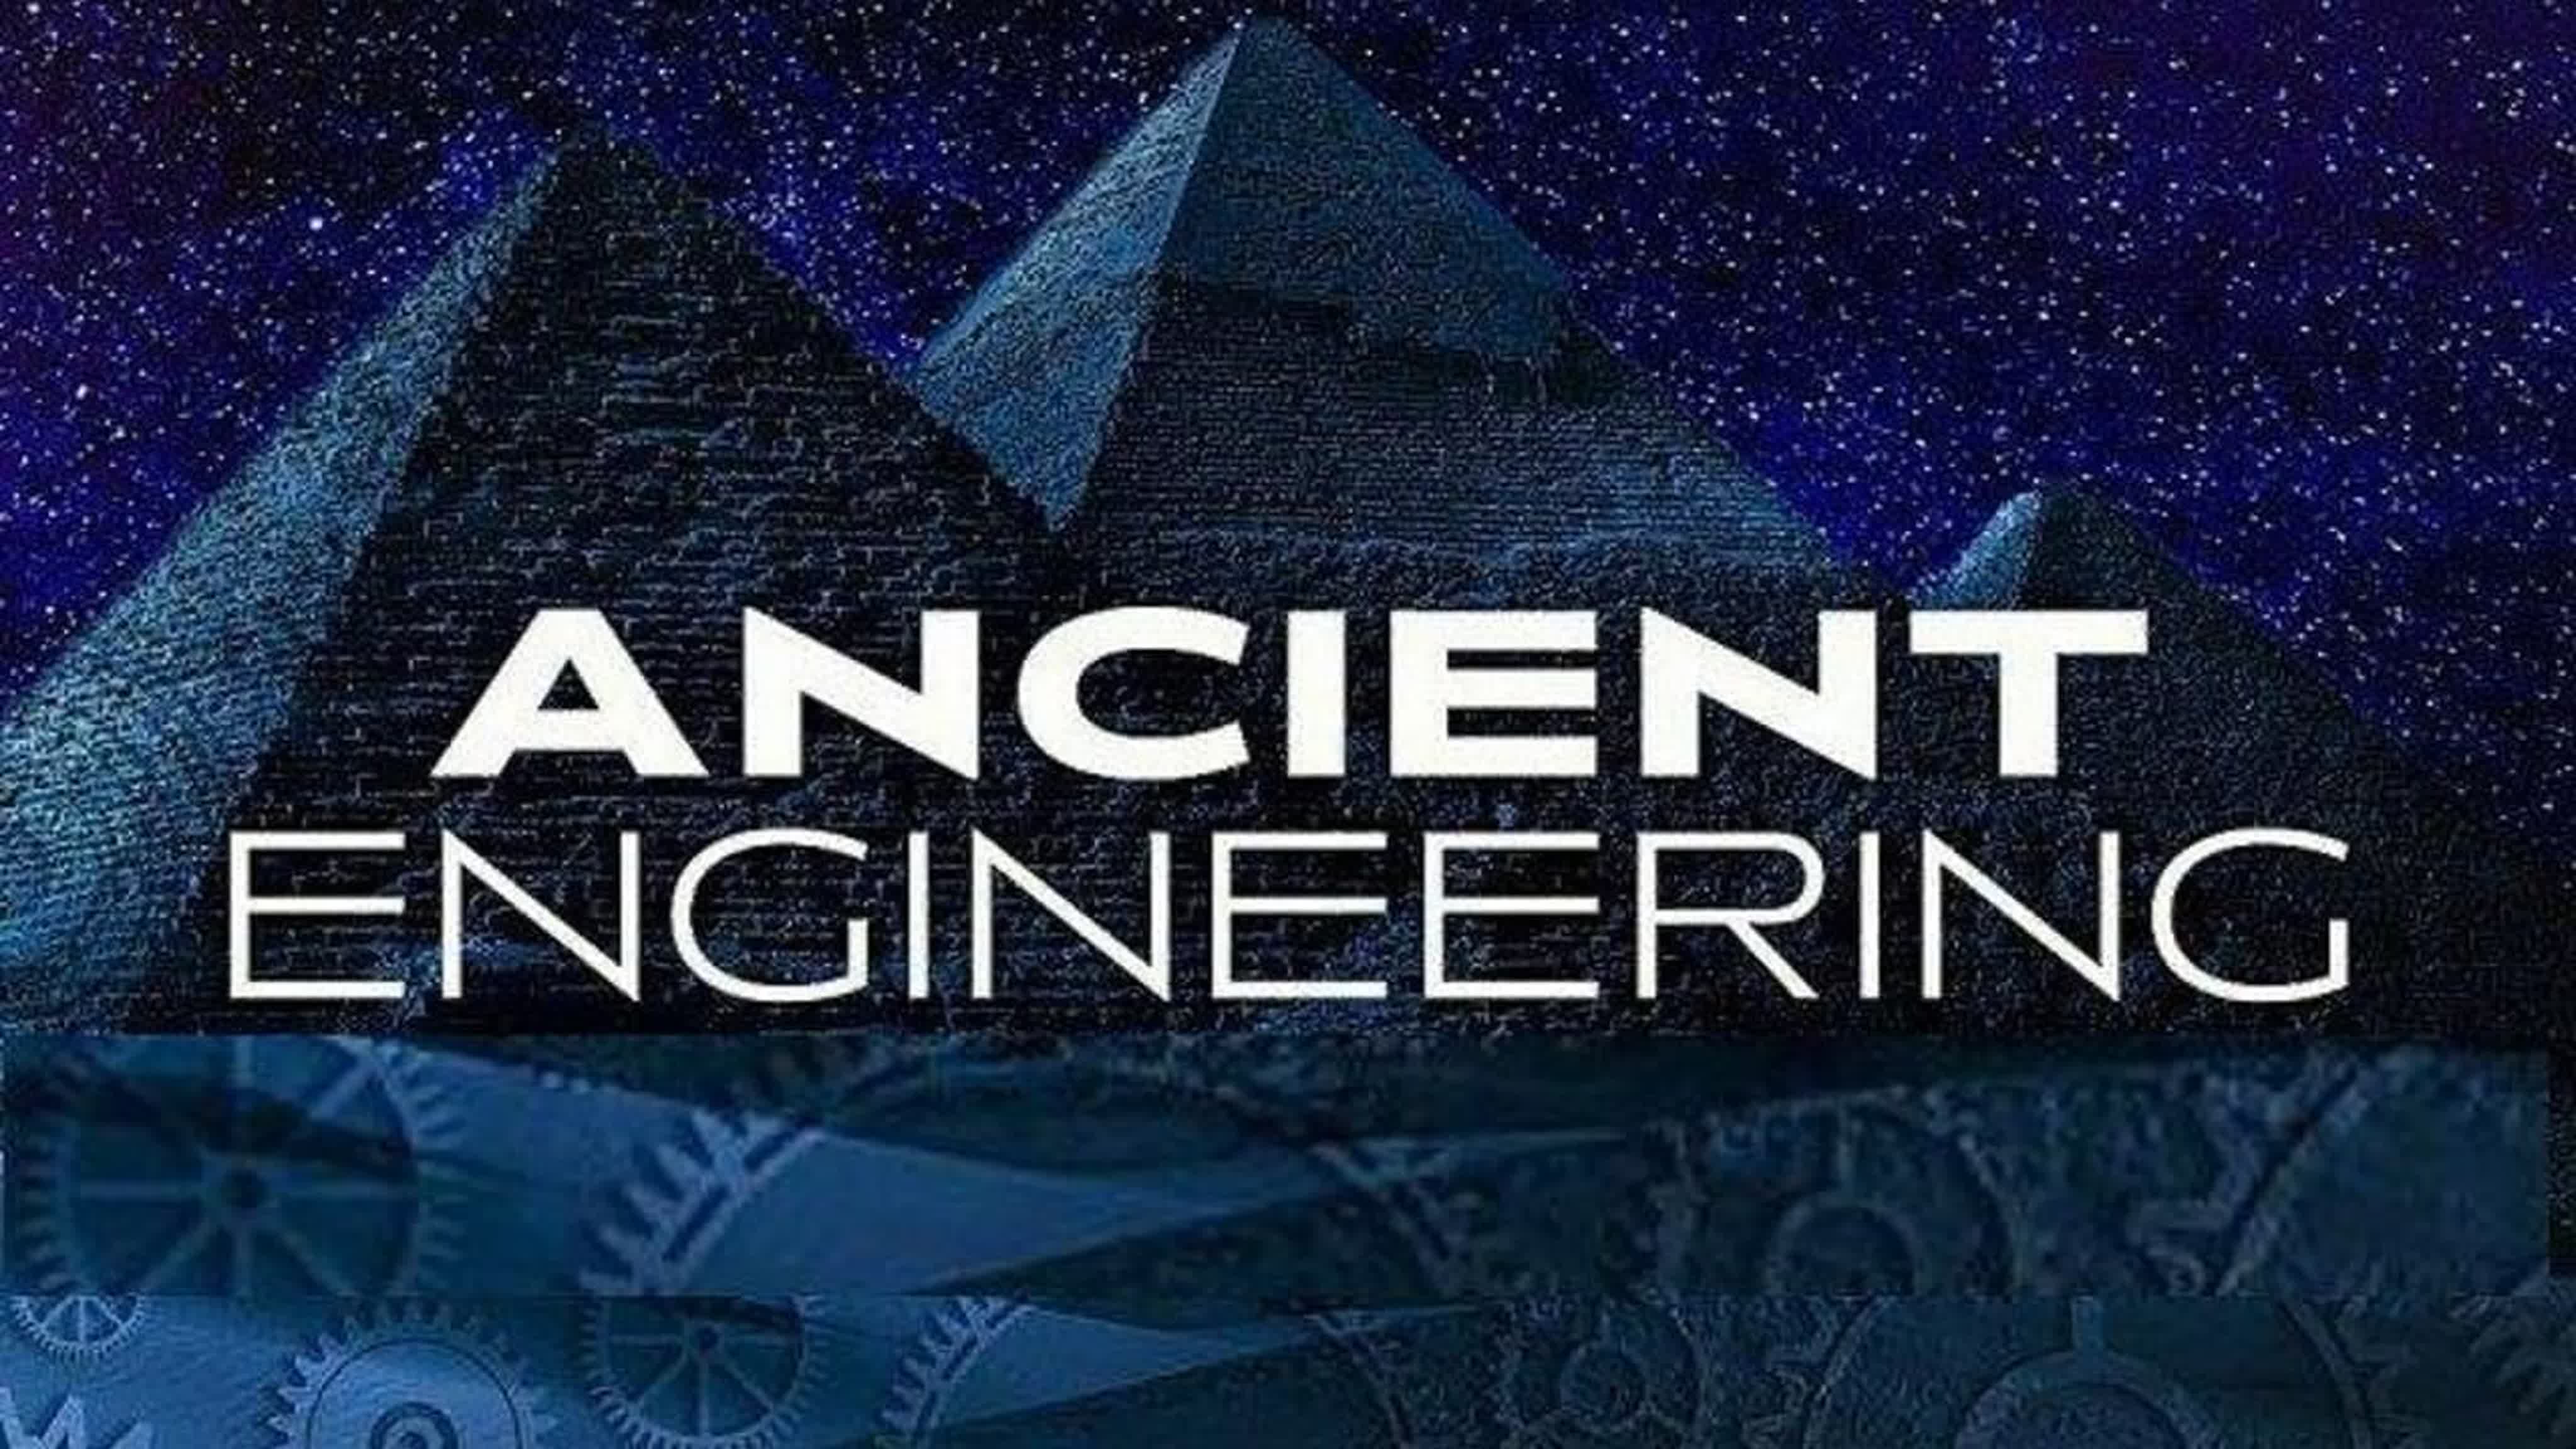 Древние конструкторы / Ancient engineering (2021)